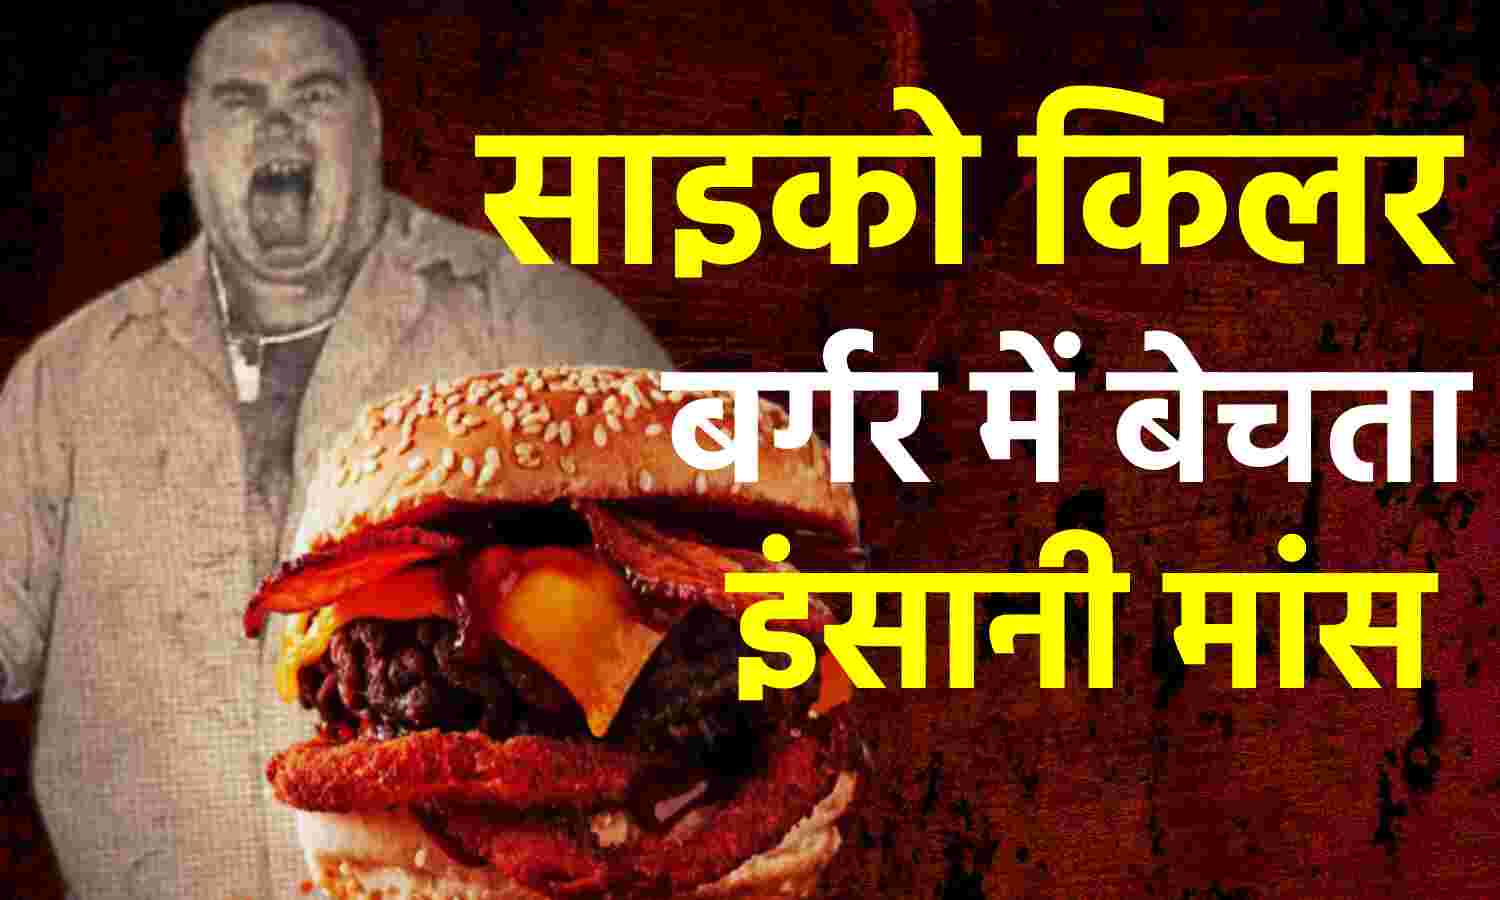 Serial Killer Story : इंसानी मांस निकाल बर्गर में बेचने वाले जोसफ मेथेनी की कहानी, जानिए एक फौजी कैसे बना सीरियल किलर